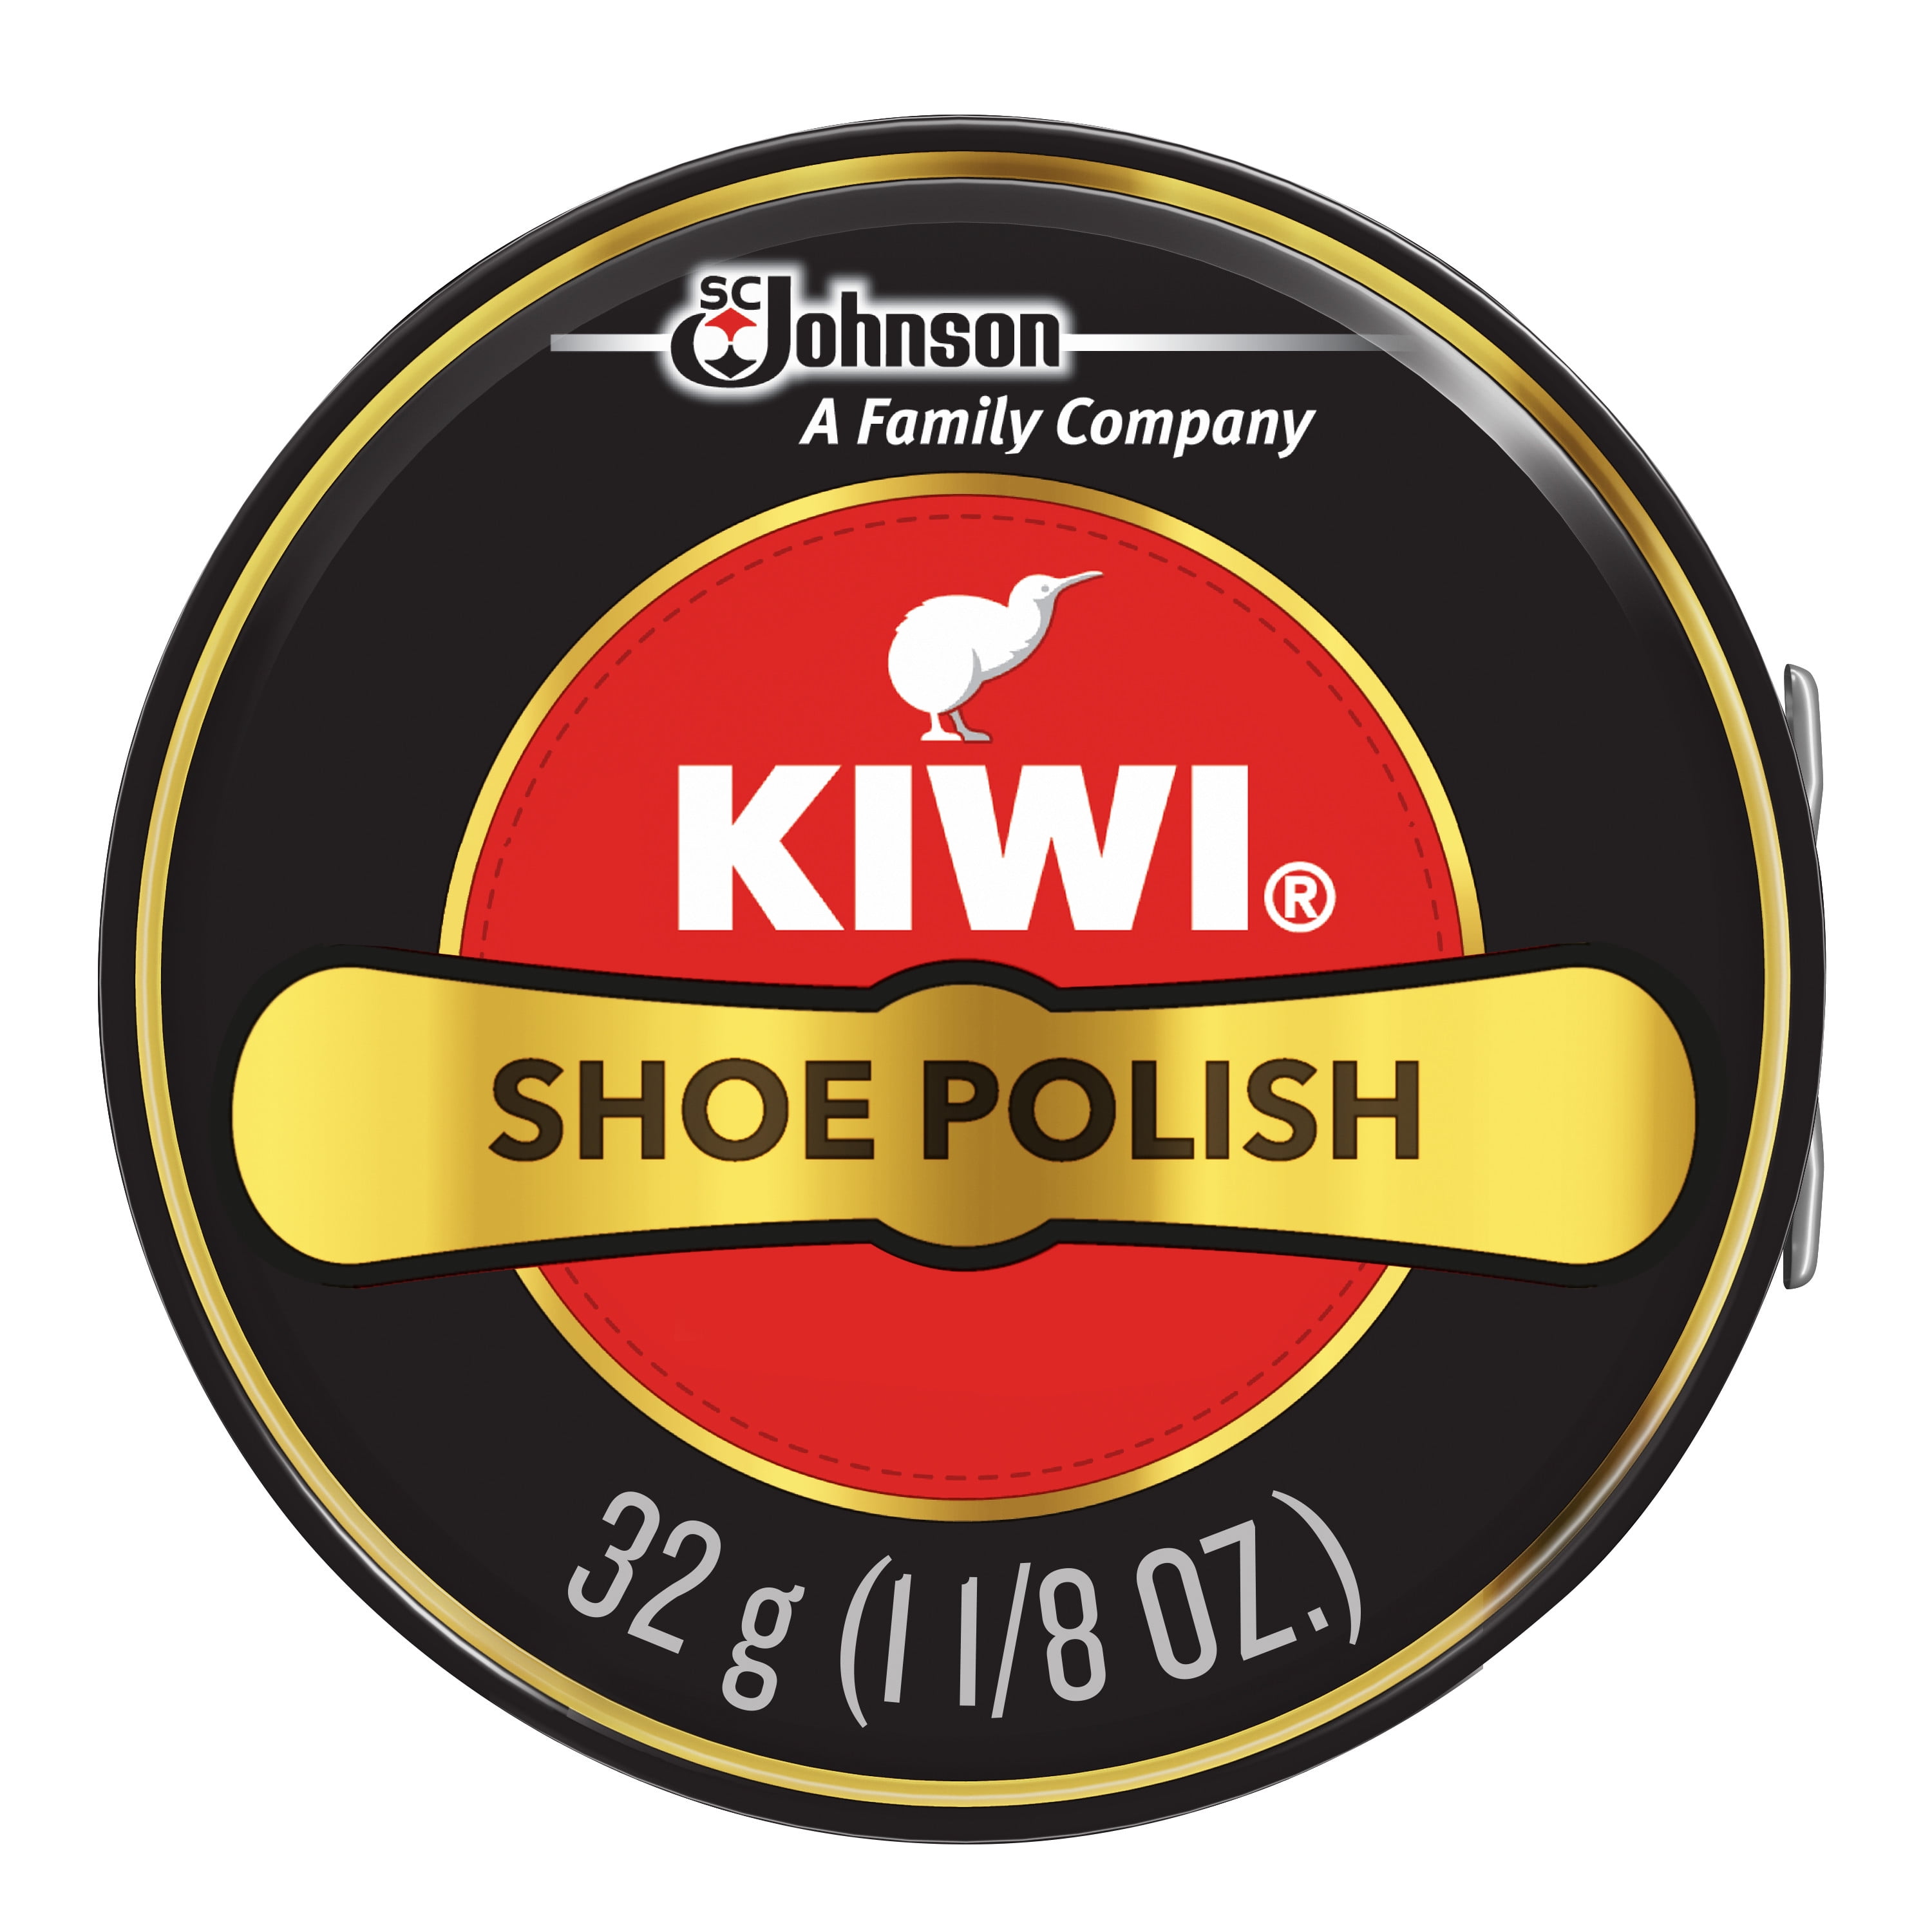 kiwi shoe polish cvs